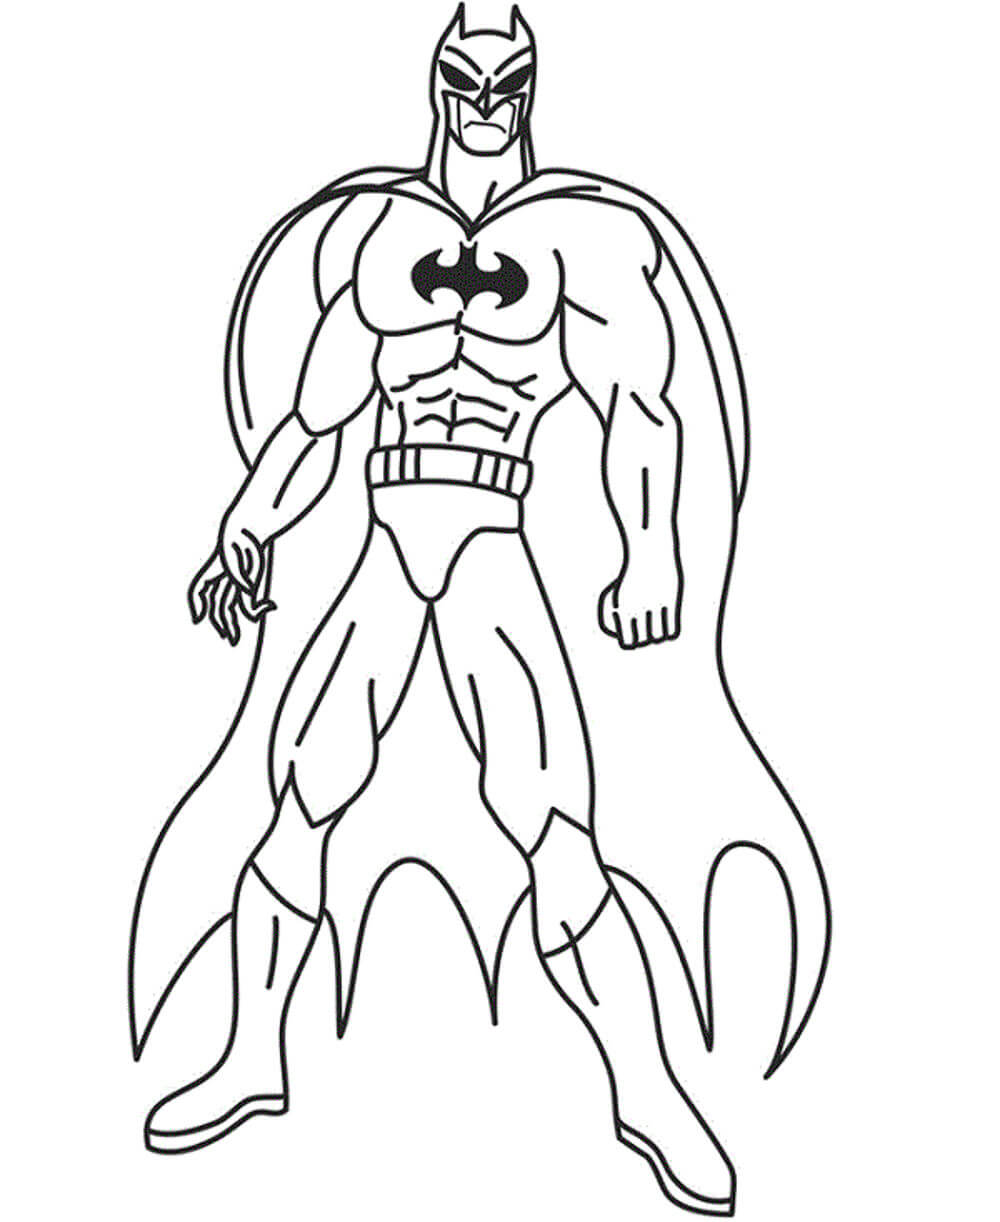 Dibujos de Impresionante Batman para colorear